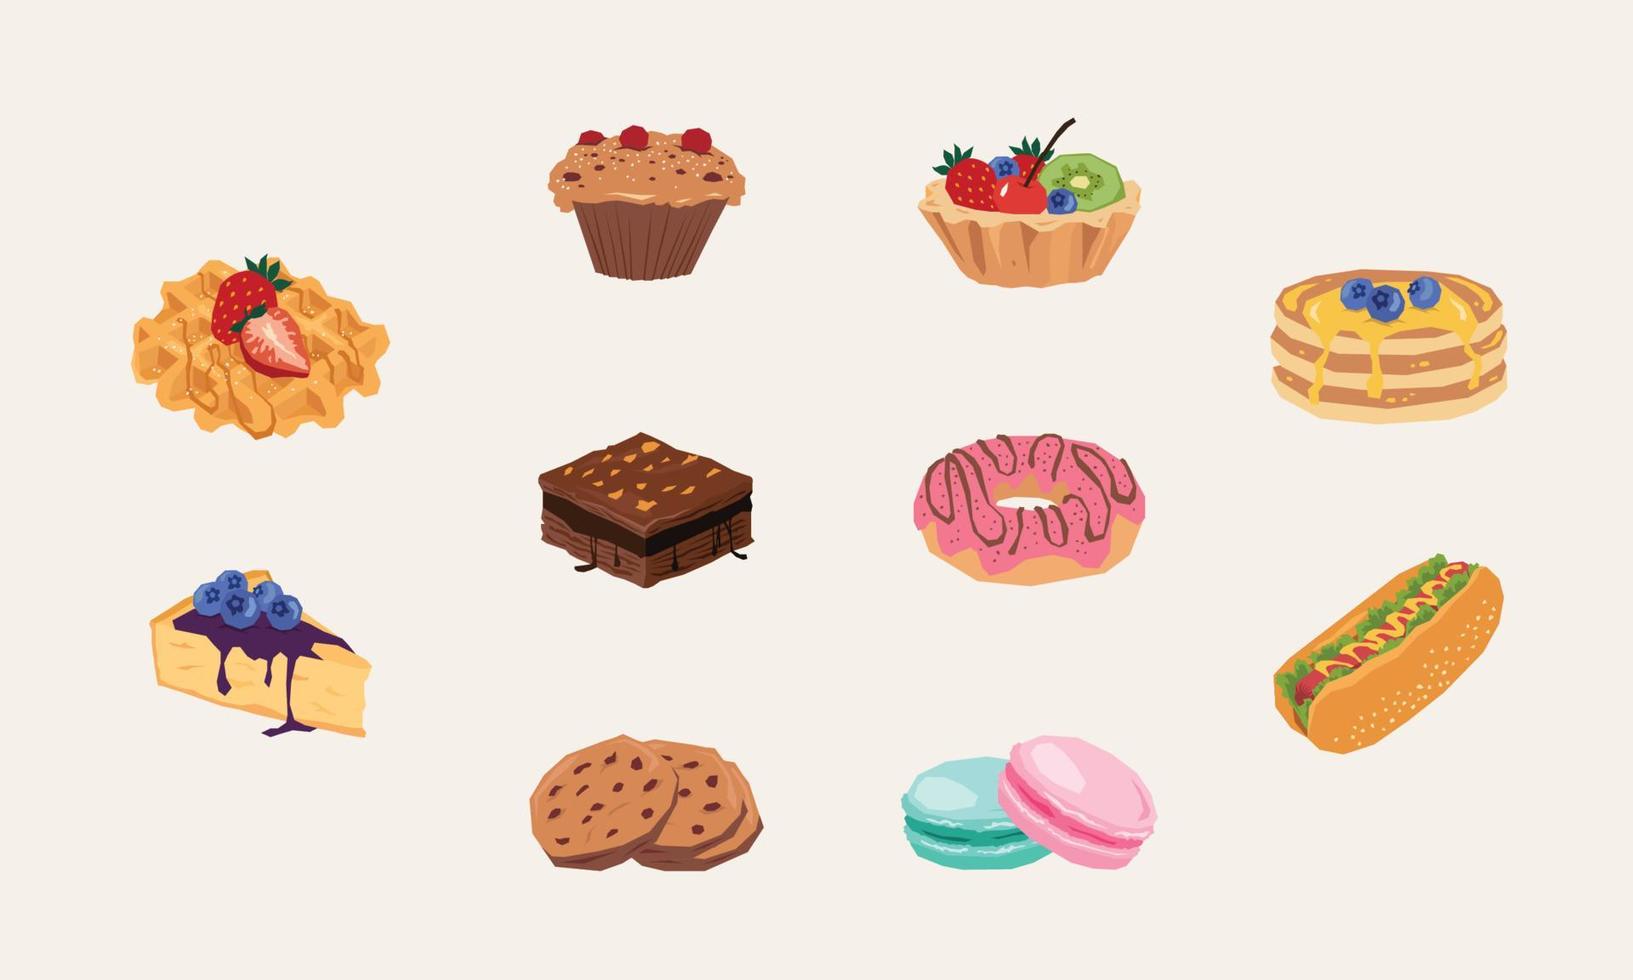 Bakery illustration pack vector